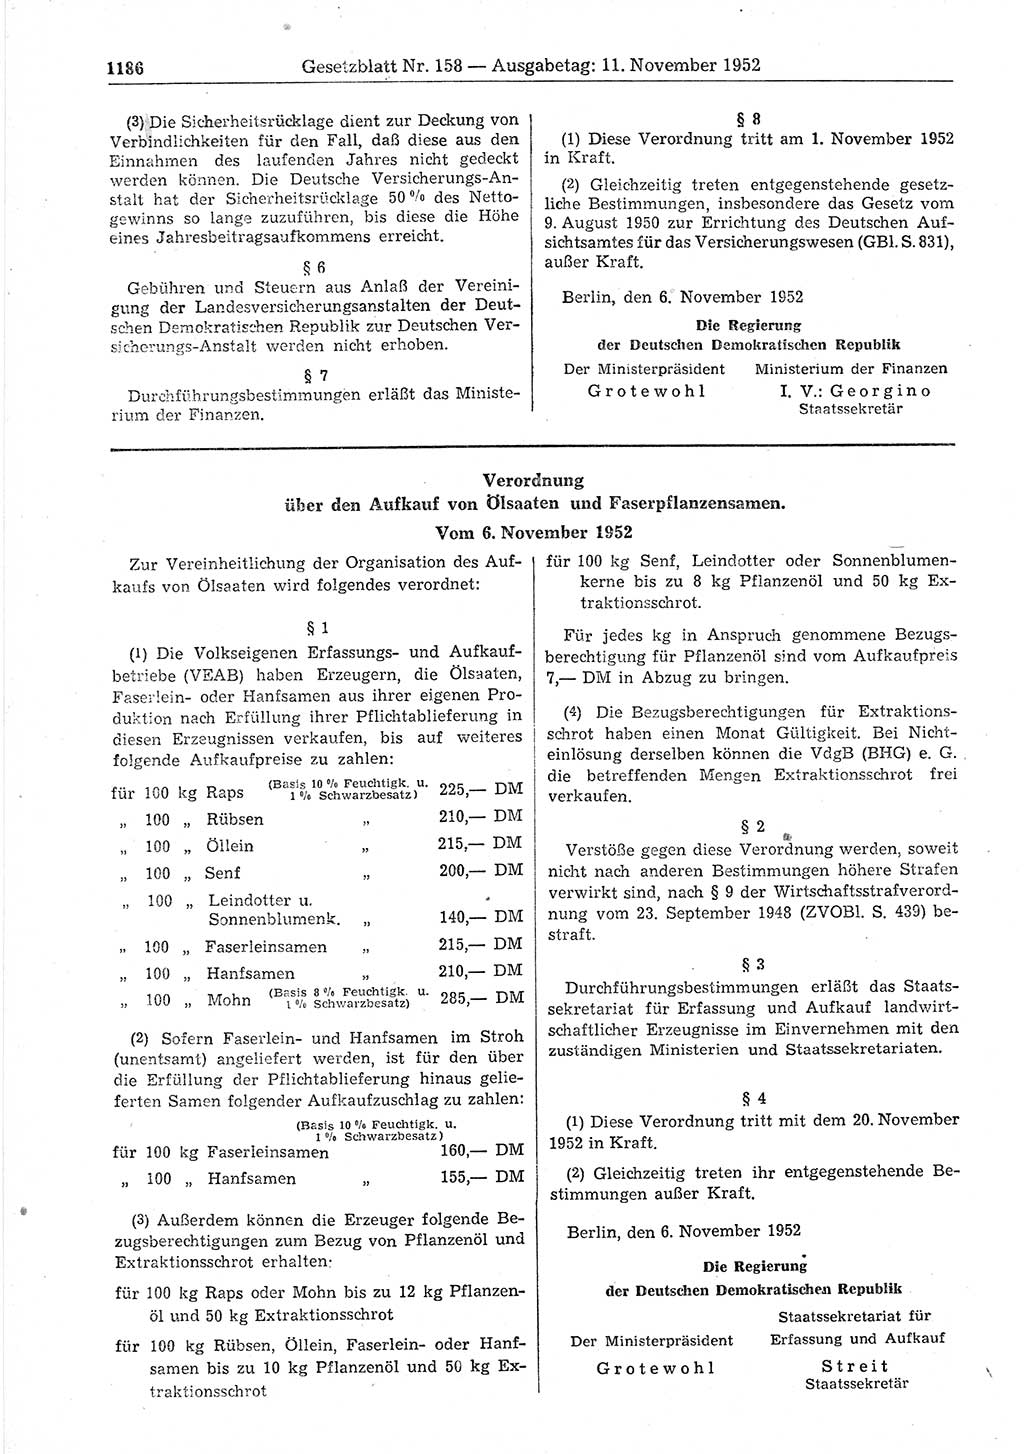 Gesetzblatt (GBl.) der Deutschen Demokratischen Republik (DDR) 1952, Seite 1186 (GBl. DDR 1952, S. 1186)